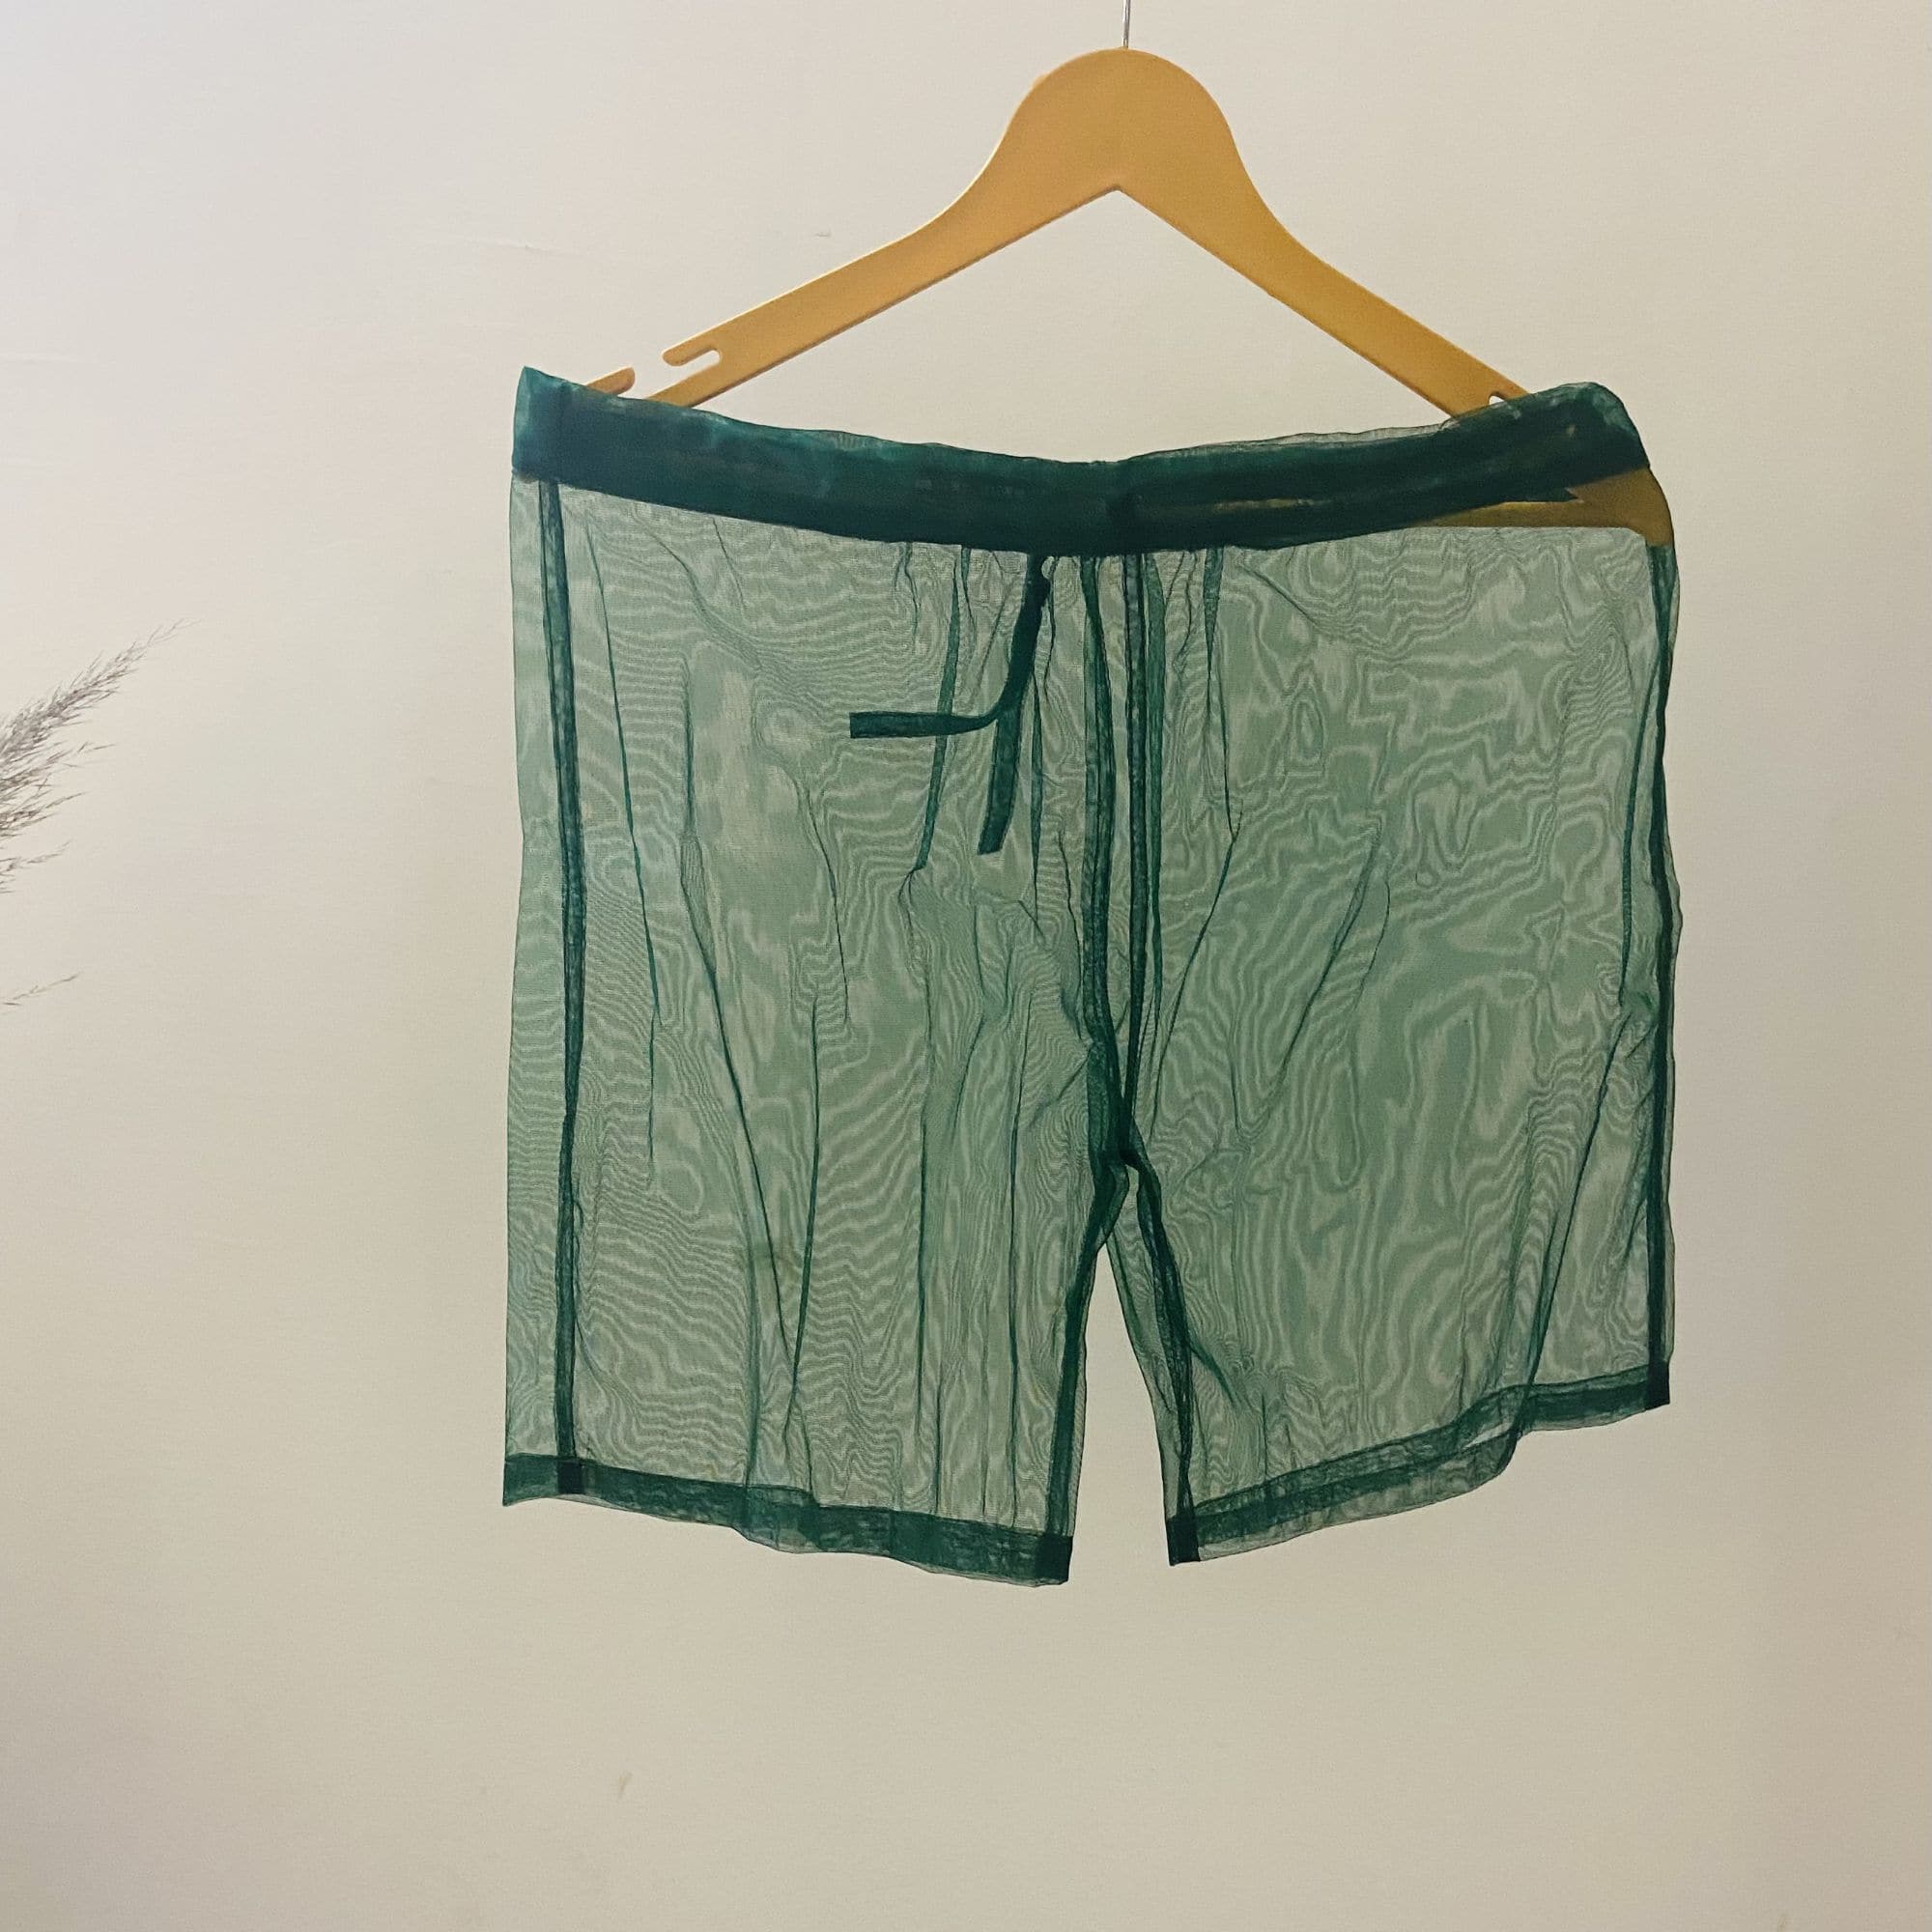 Green mesh party shorts